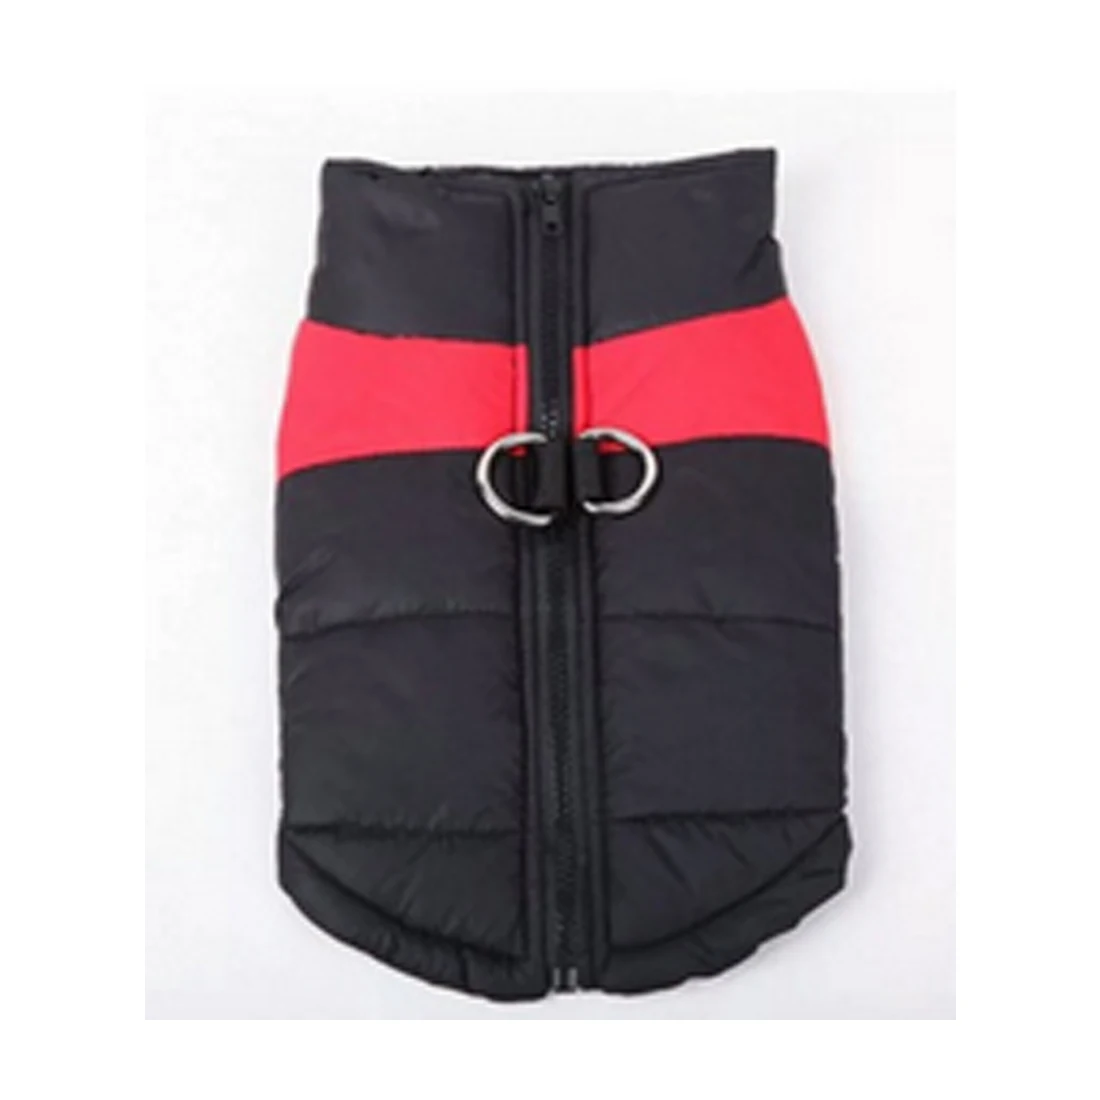 Одежда для домашних собак теплое большое пальто для собаки щенка одежда водонепроницаемый жилет для домашних животных куртка для маленьких средних и больших собак золотистый ретривер S-5XL - Цвет: red and black